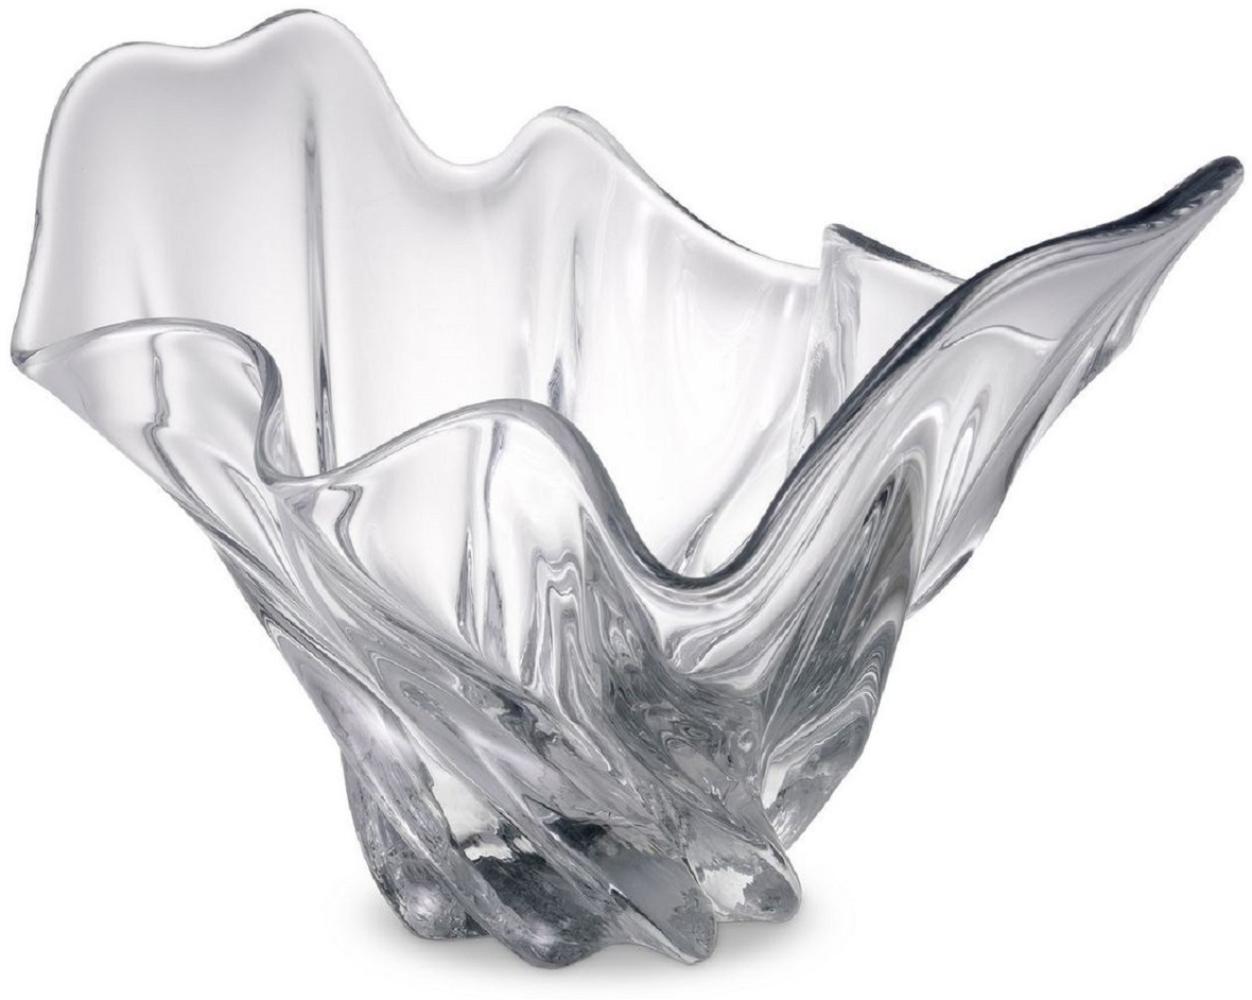 Casa Padrino Luxus Schüssel 42 x 27 x H. 25 cm - Moderne Deko Schüssel aus mundgeblasenem Glas - Deko Accessoires - Luxus Qualität Bild 1